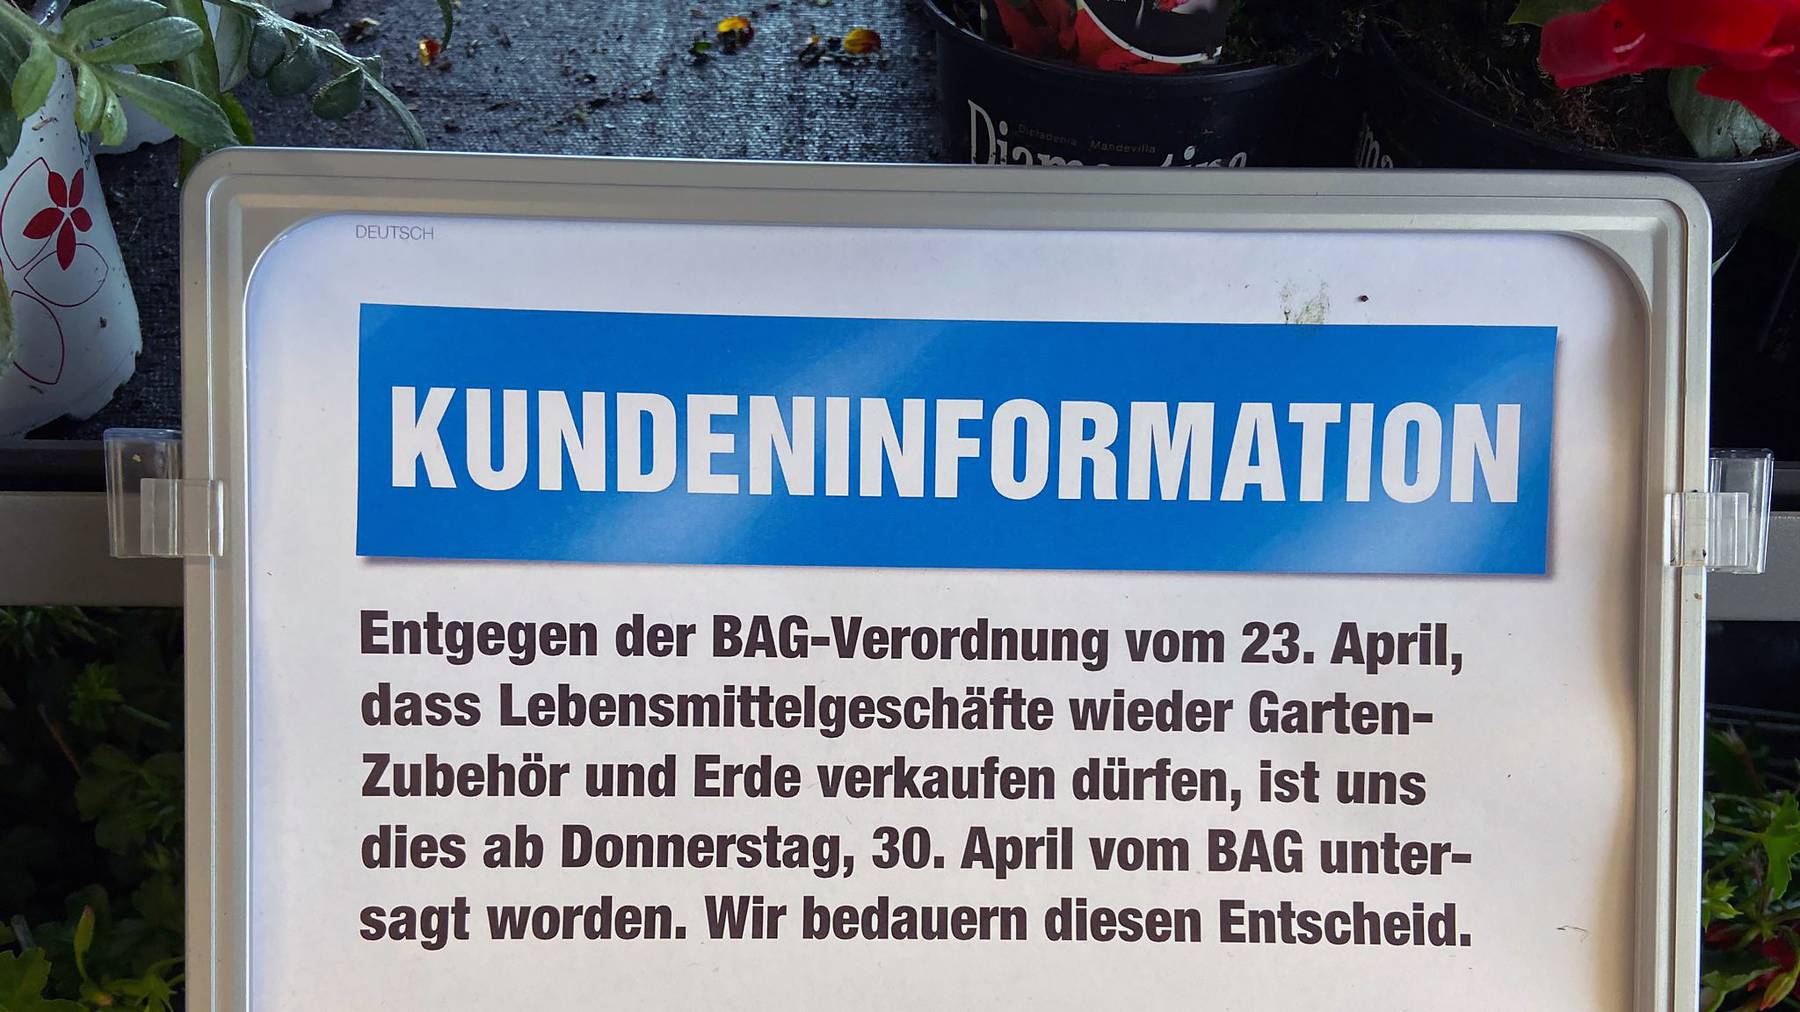 Kundeninformation der Migros in Malters, Luzern.